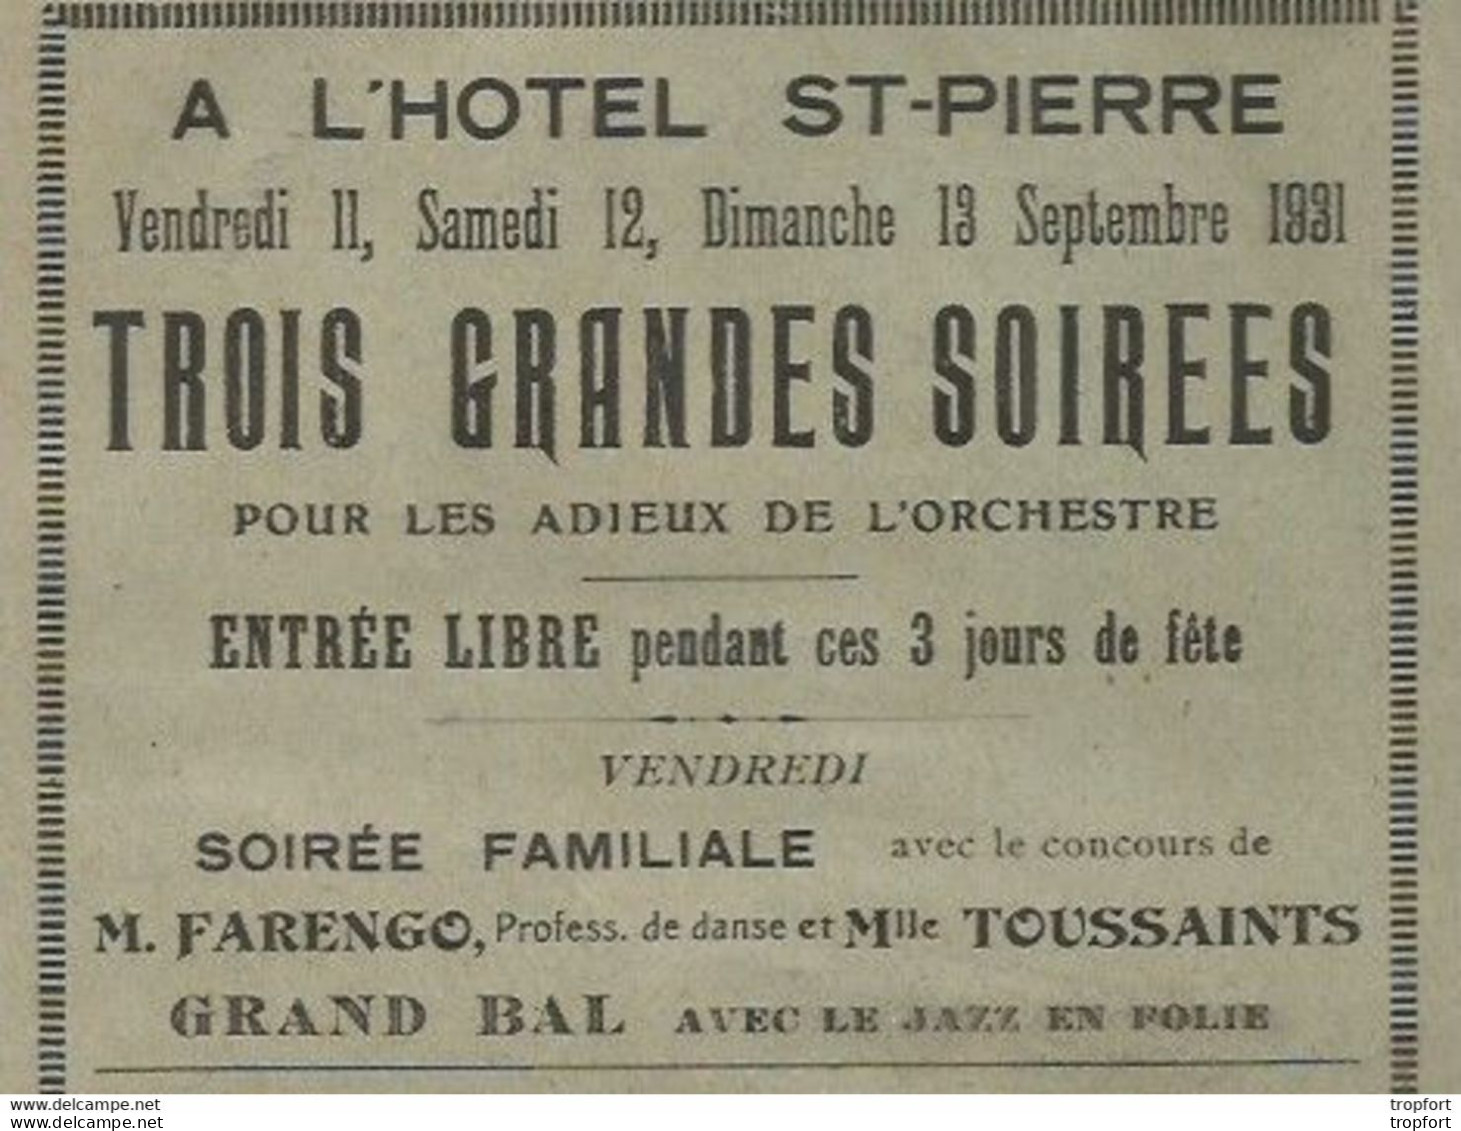 Rare Affichette Programme HOTEL ST-PIERRE 1931 / Baigneurs AULT ONIVAL Farengo Toussaints - Programs